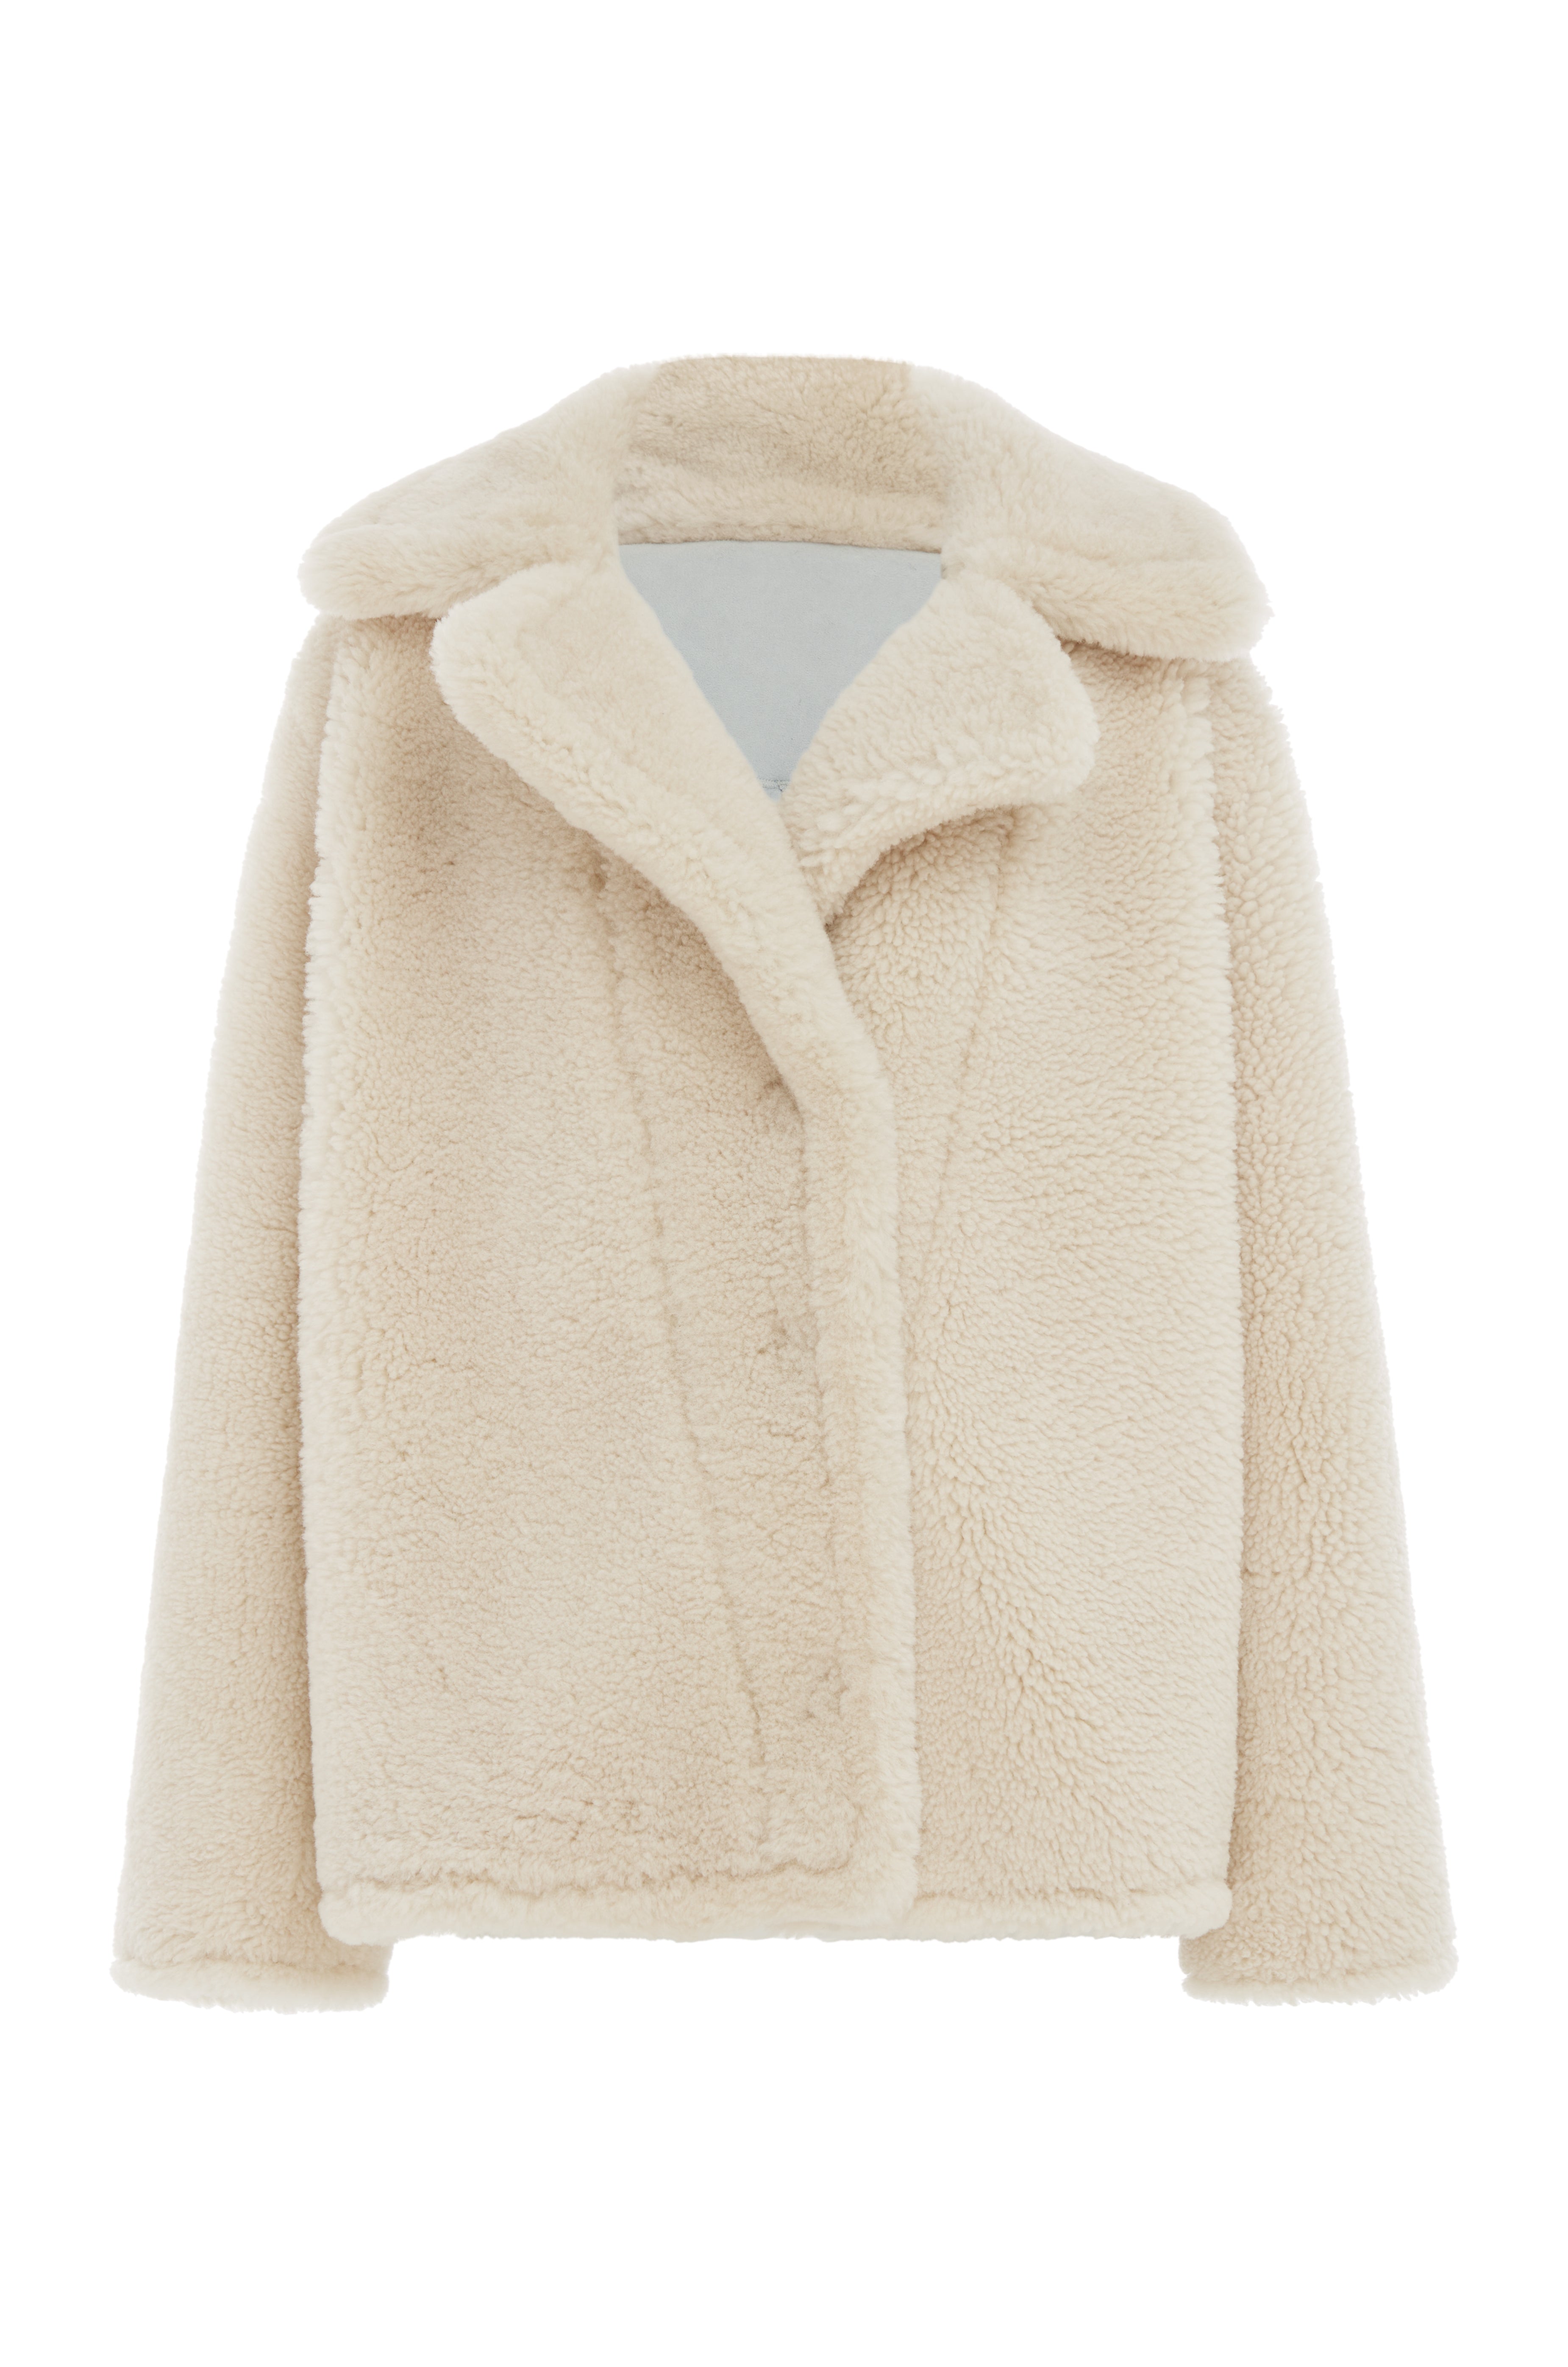 Luxe Sheepskin Coat in Cream or Navy